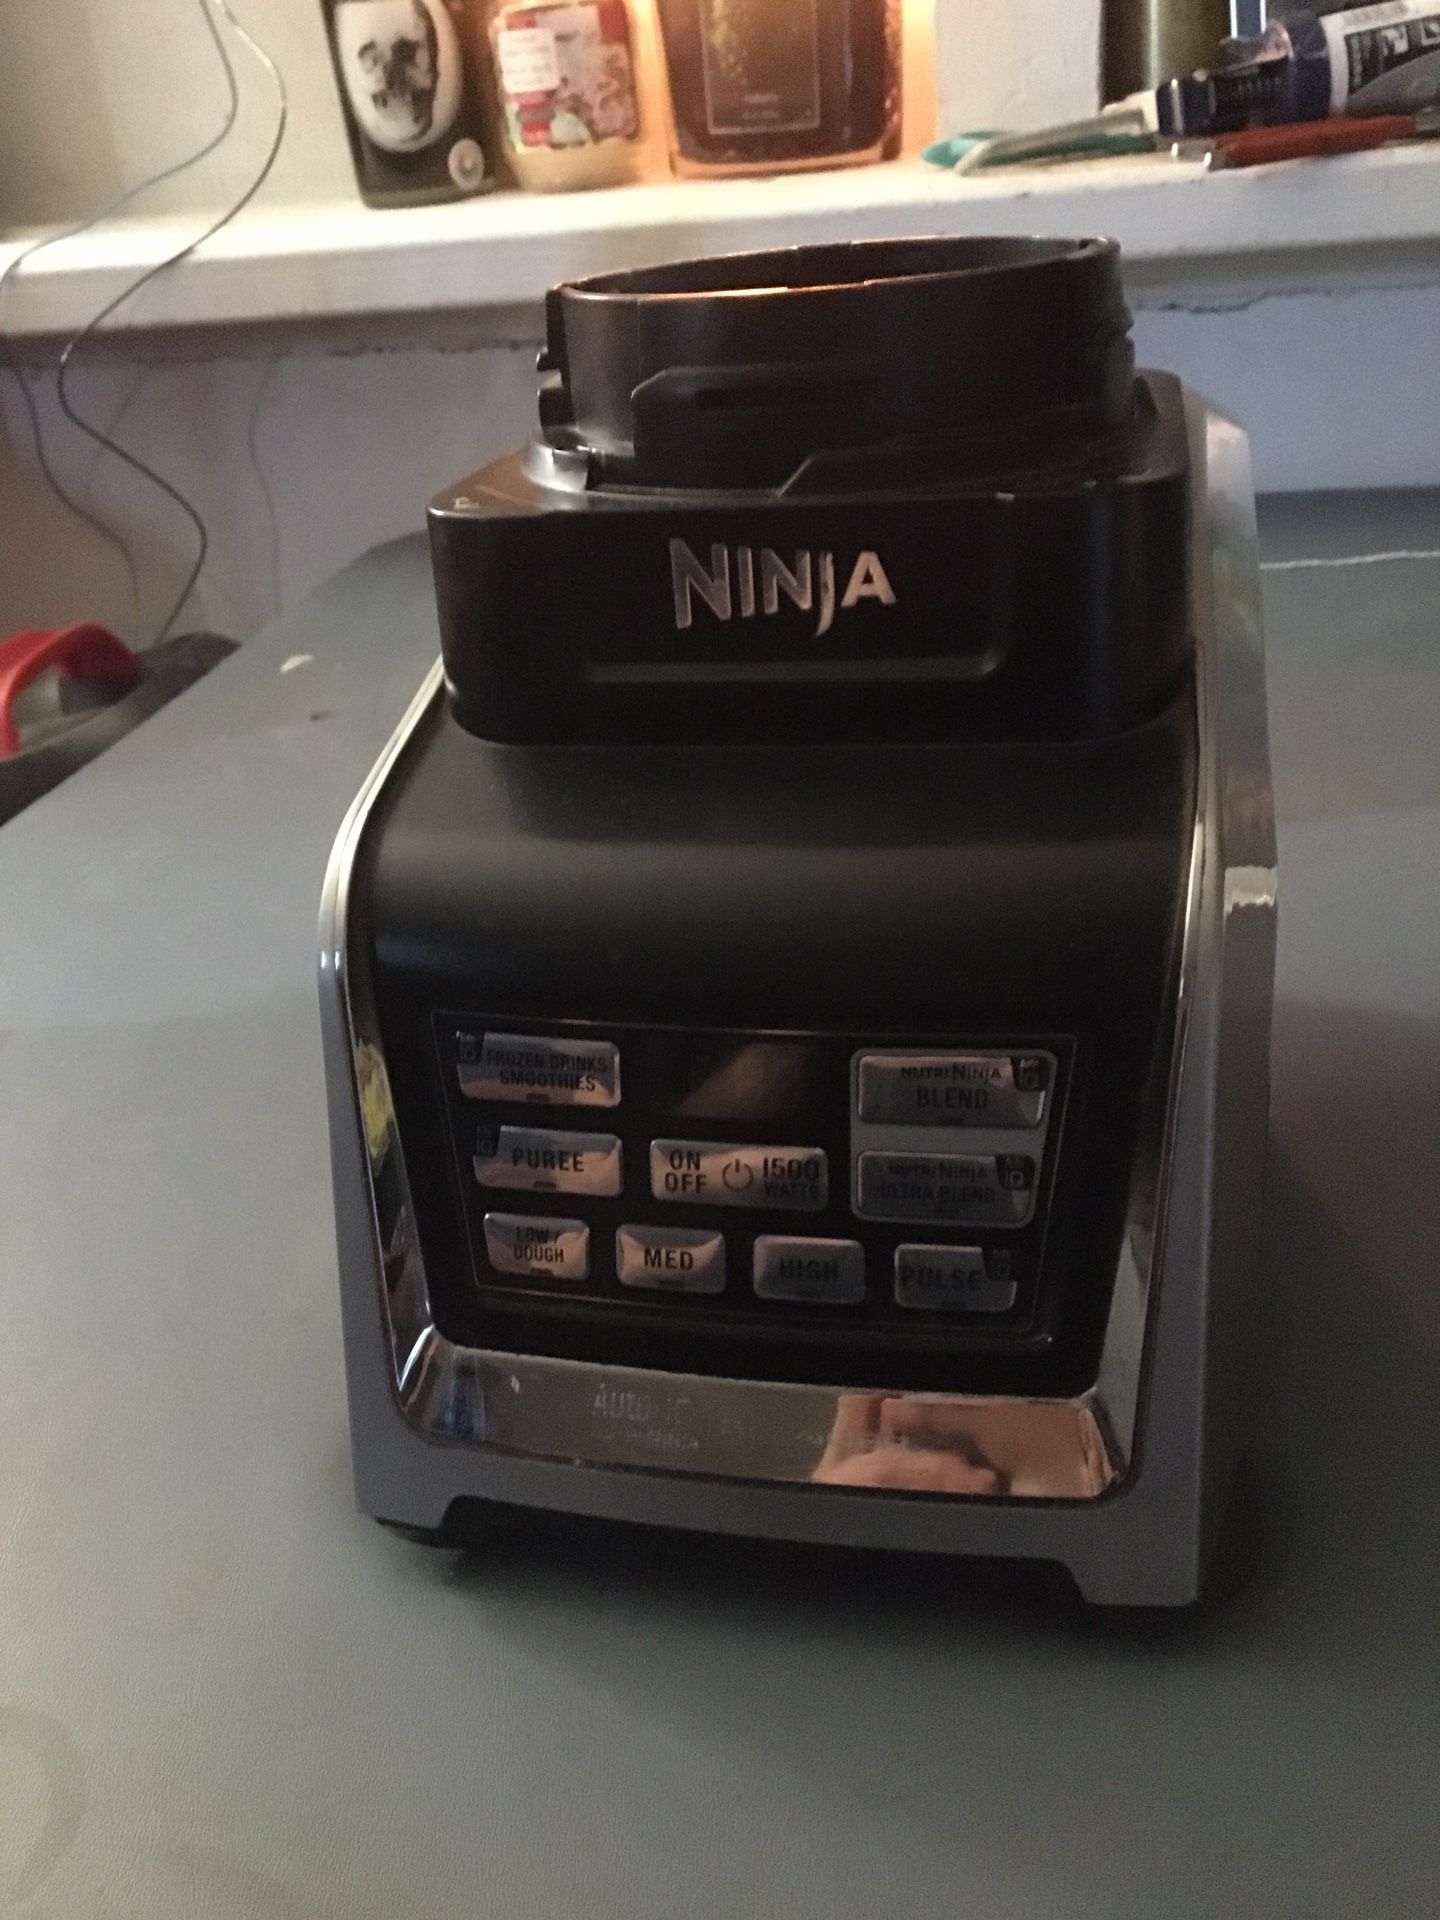 Ninja Auto-IQ Blender